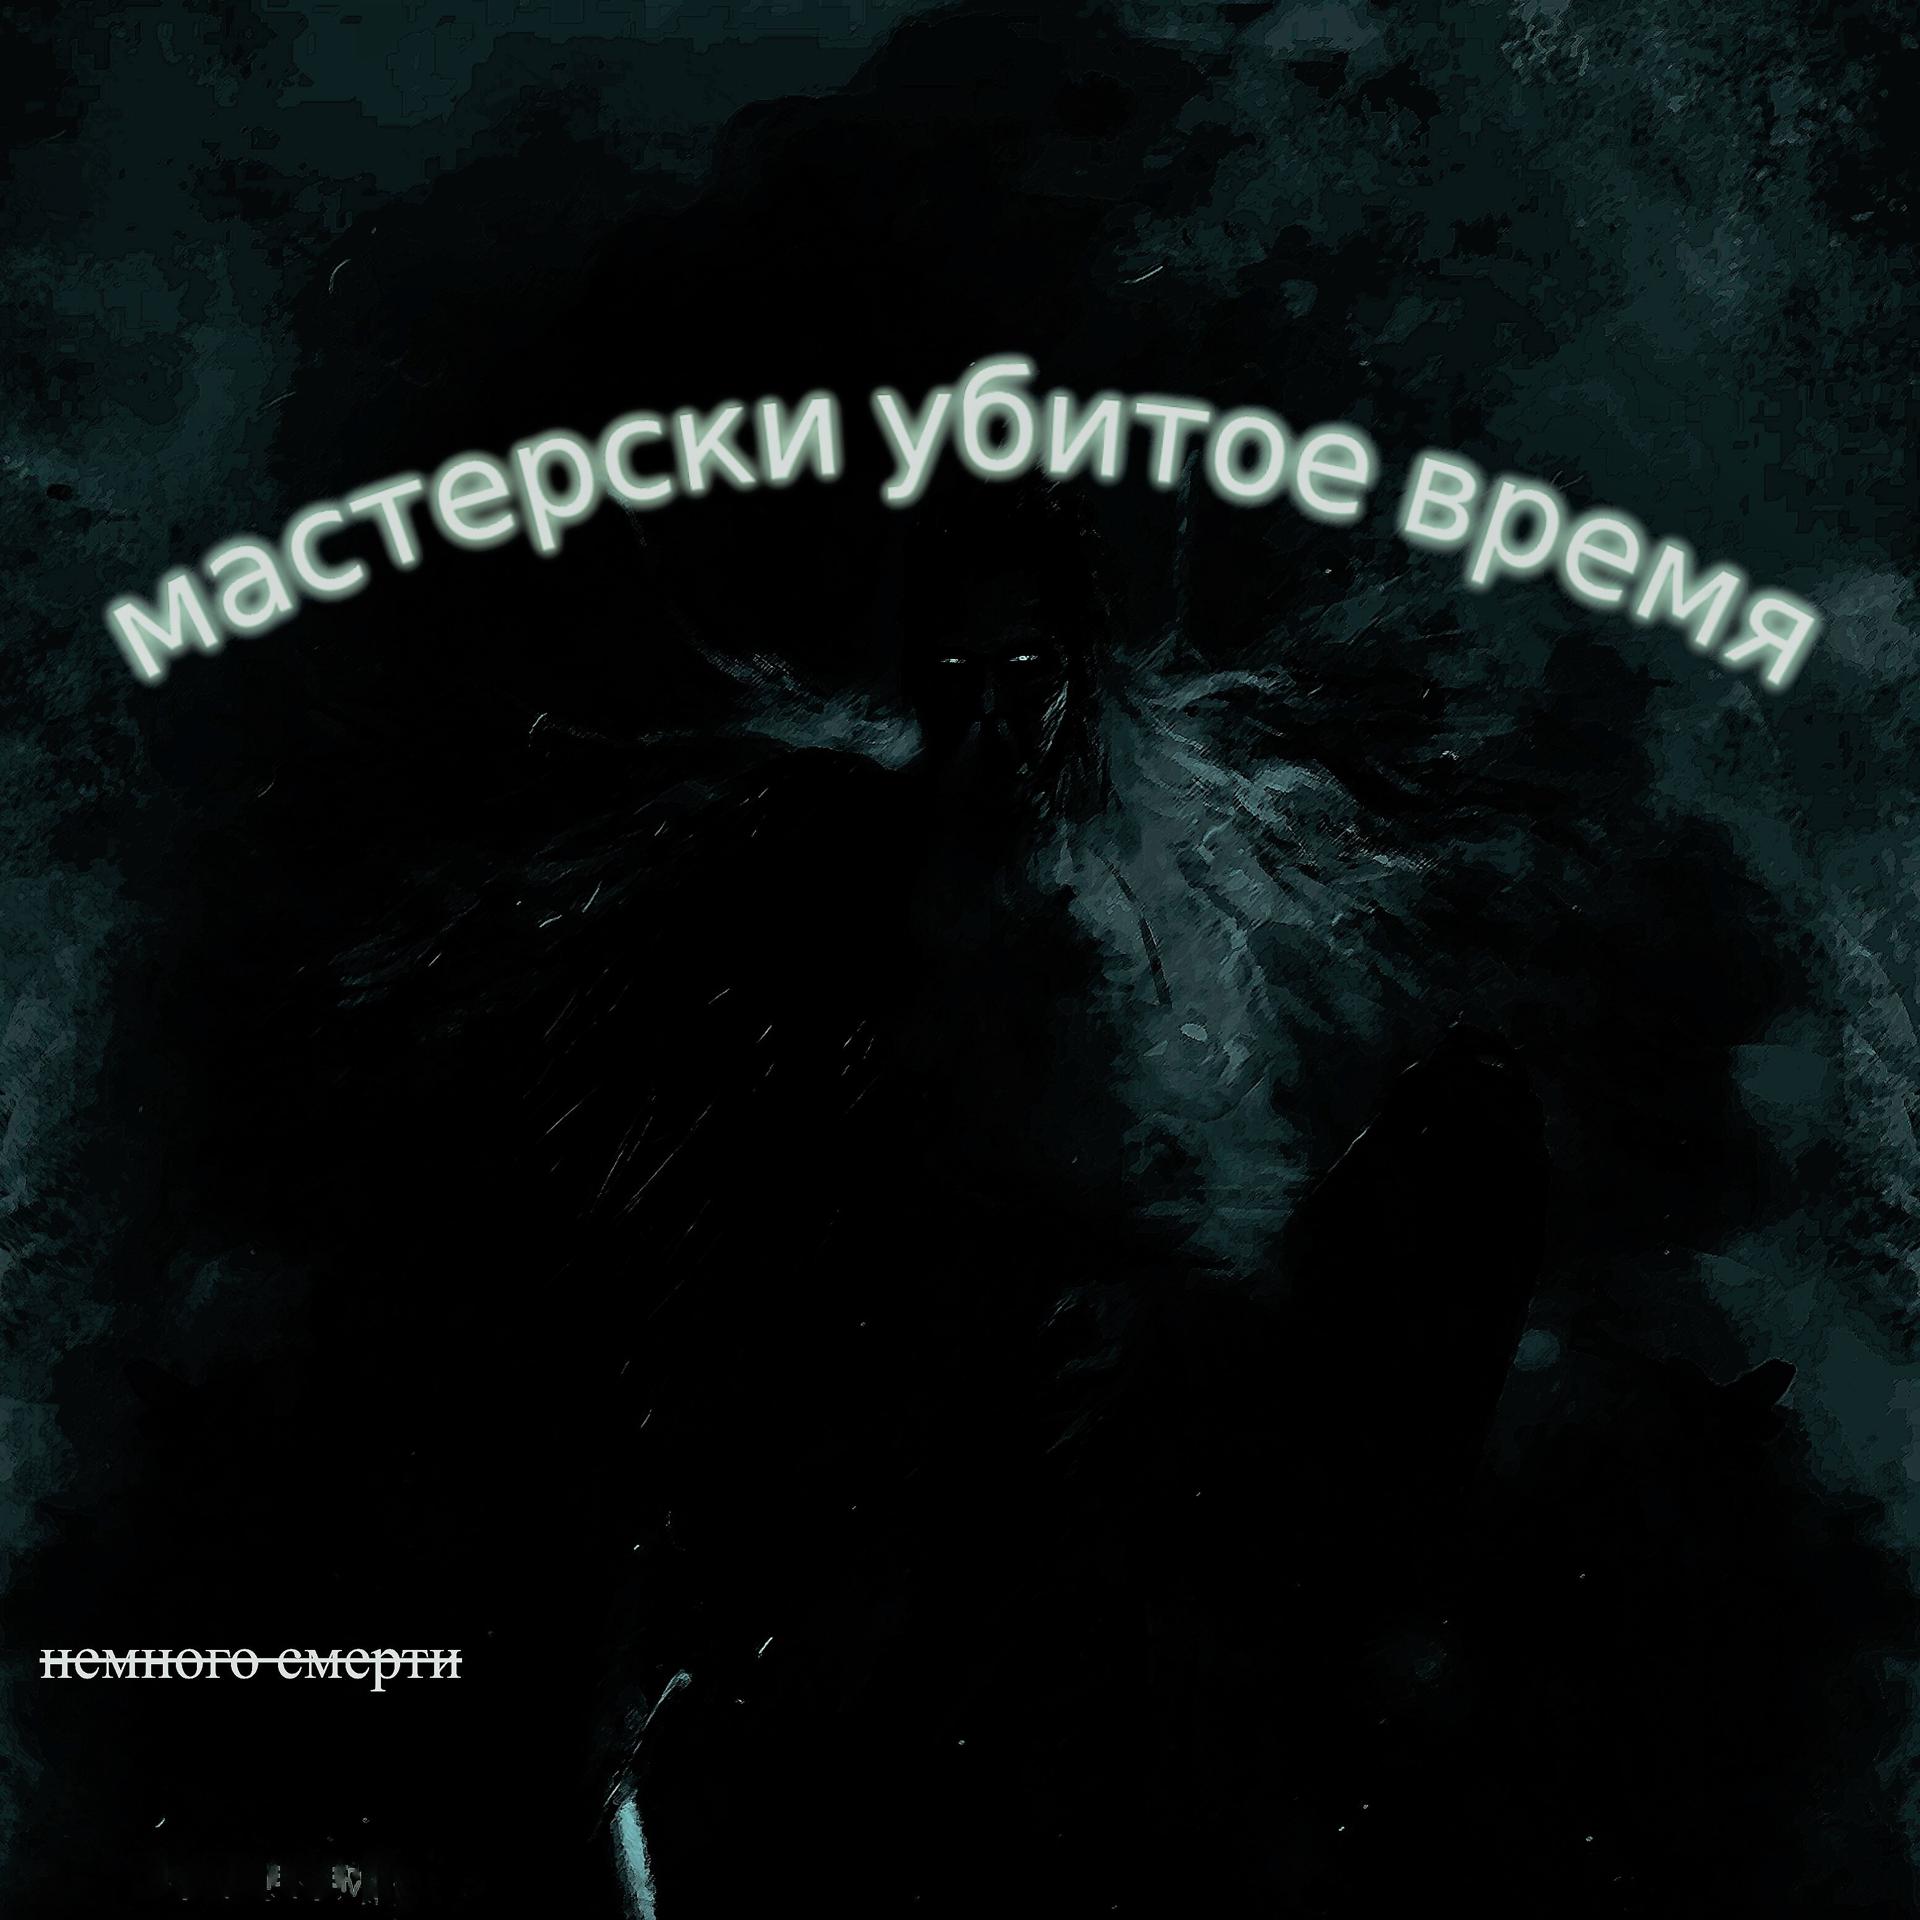 Постер альбома Мастерски убитое время